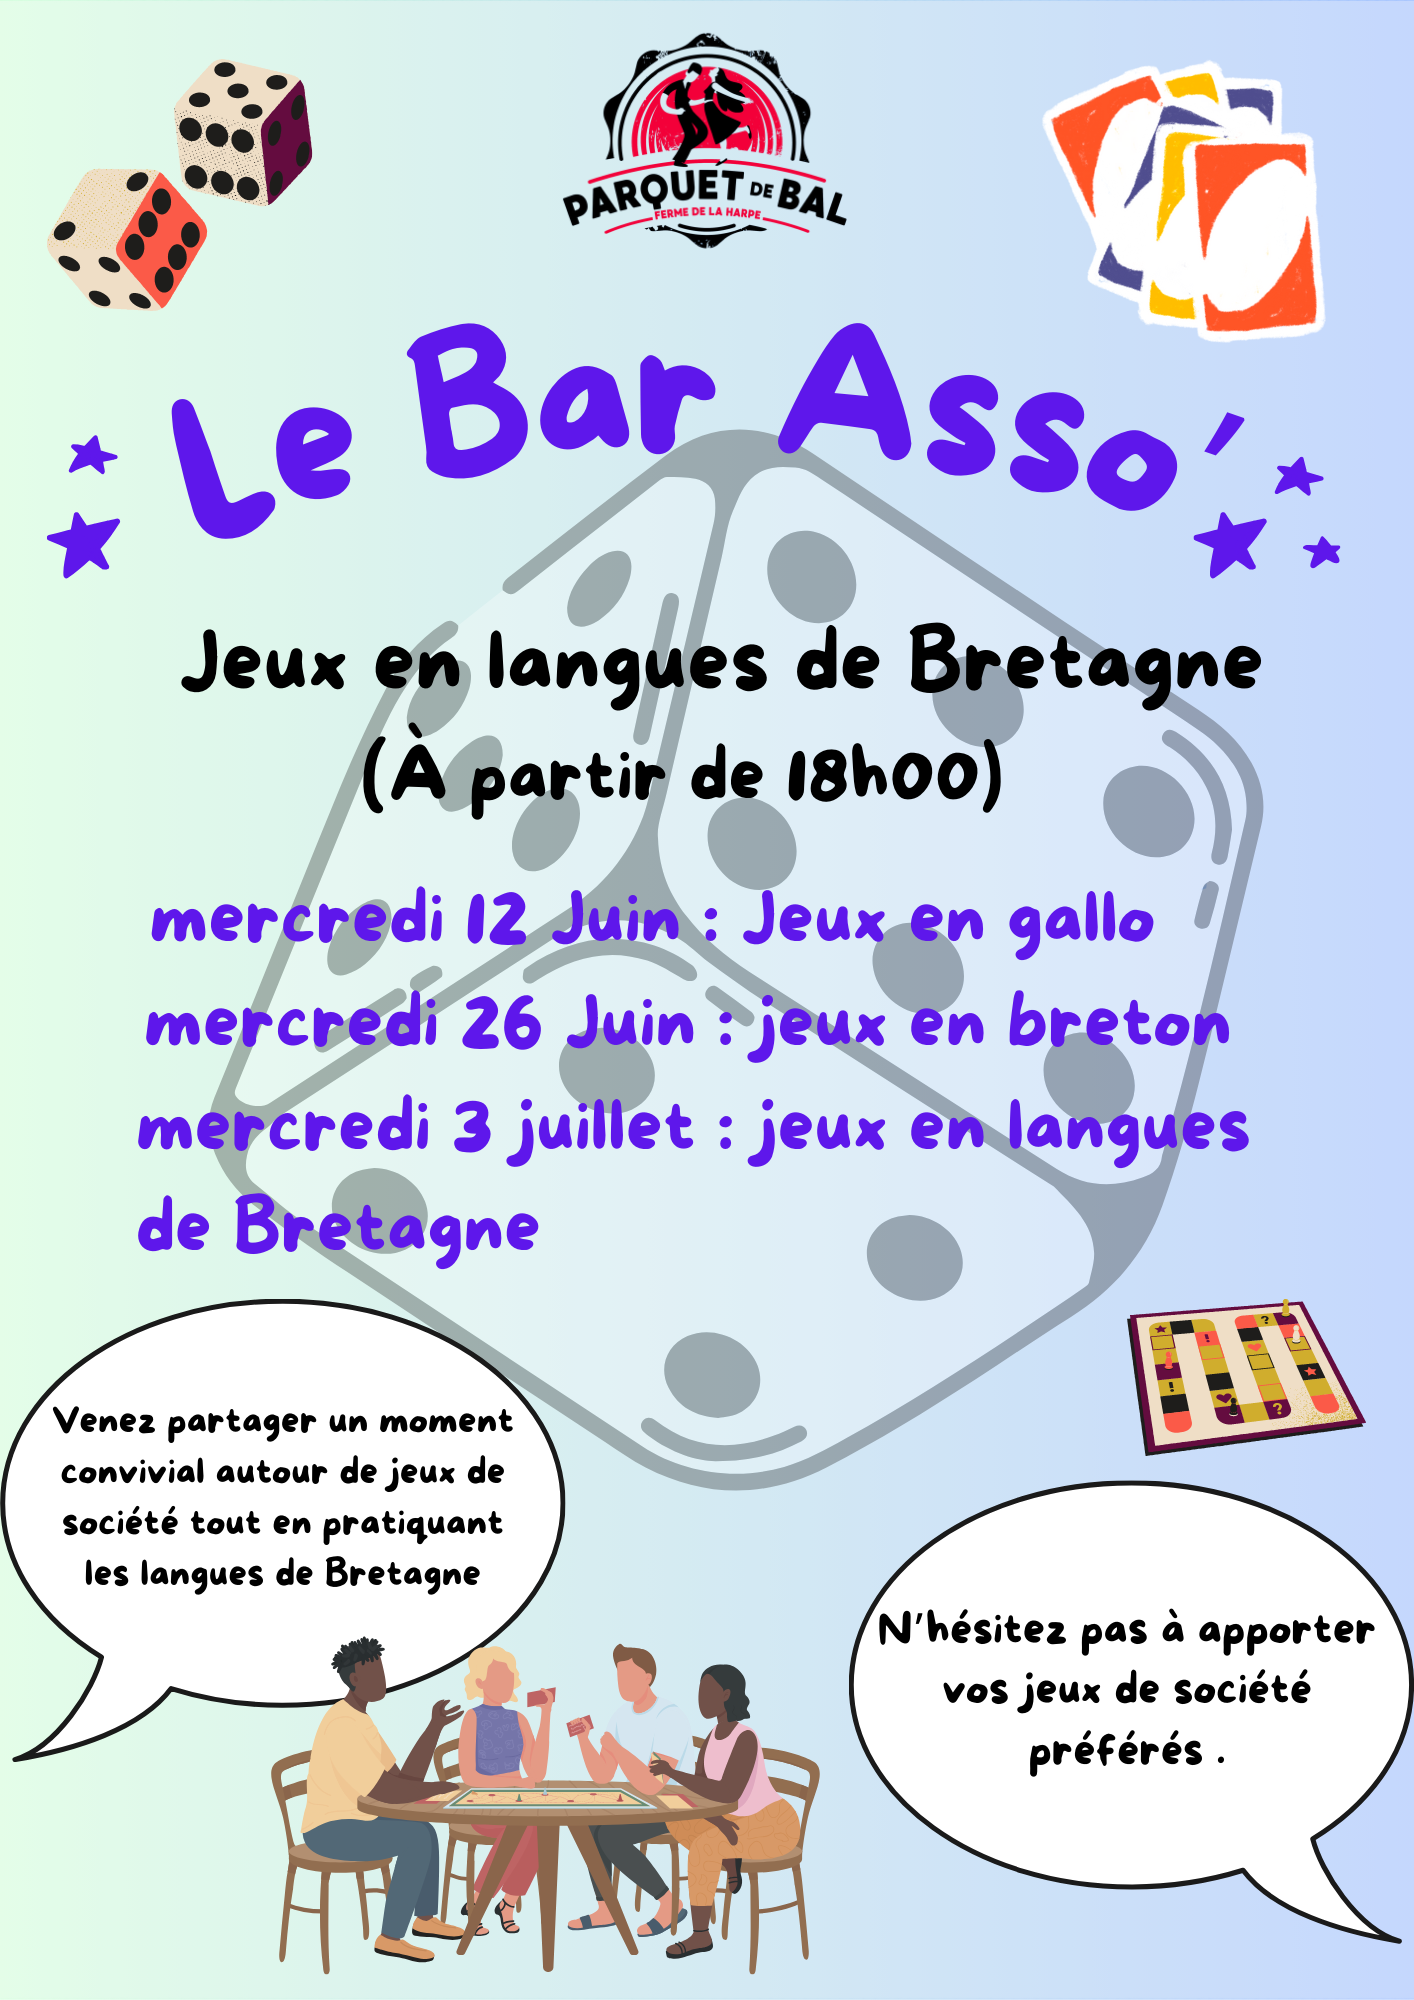 Affiche bar asso' jeux en langues de Bretagne